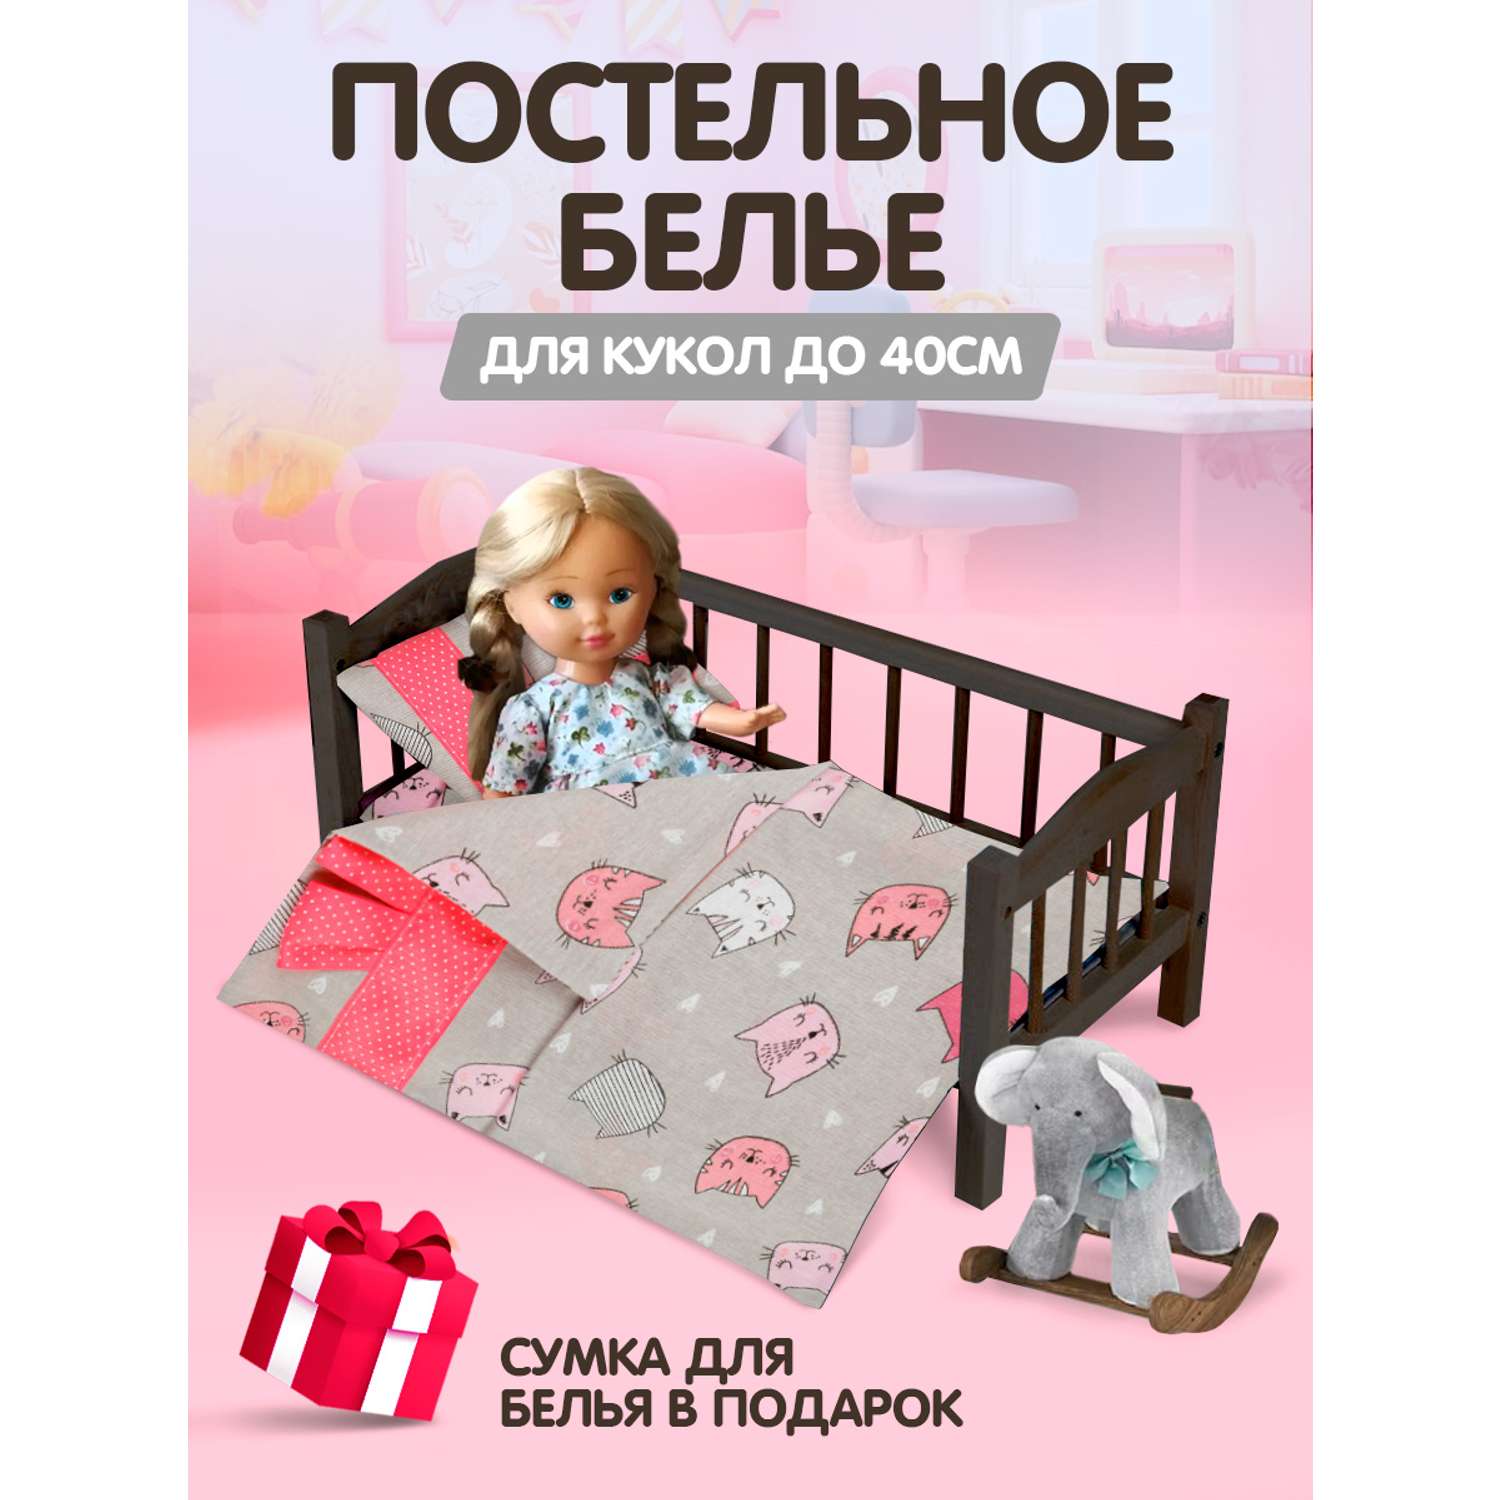 Комплект постельного белья Тутси для куклы Сладкий сон киски розовый 125-2021/кис - фото 2